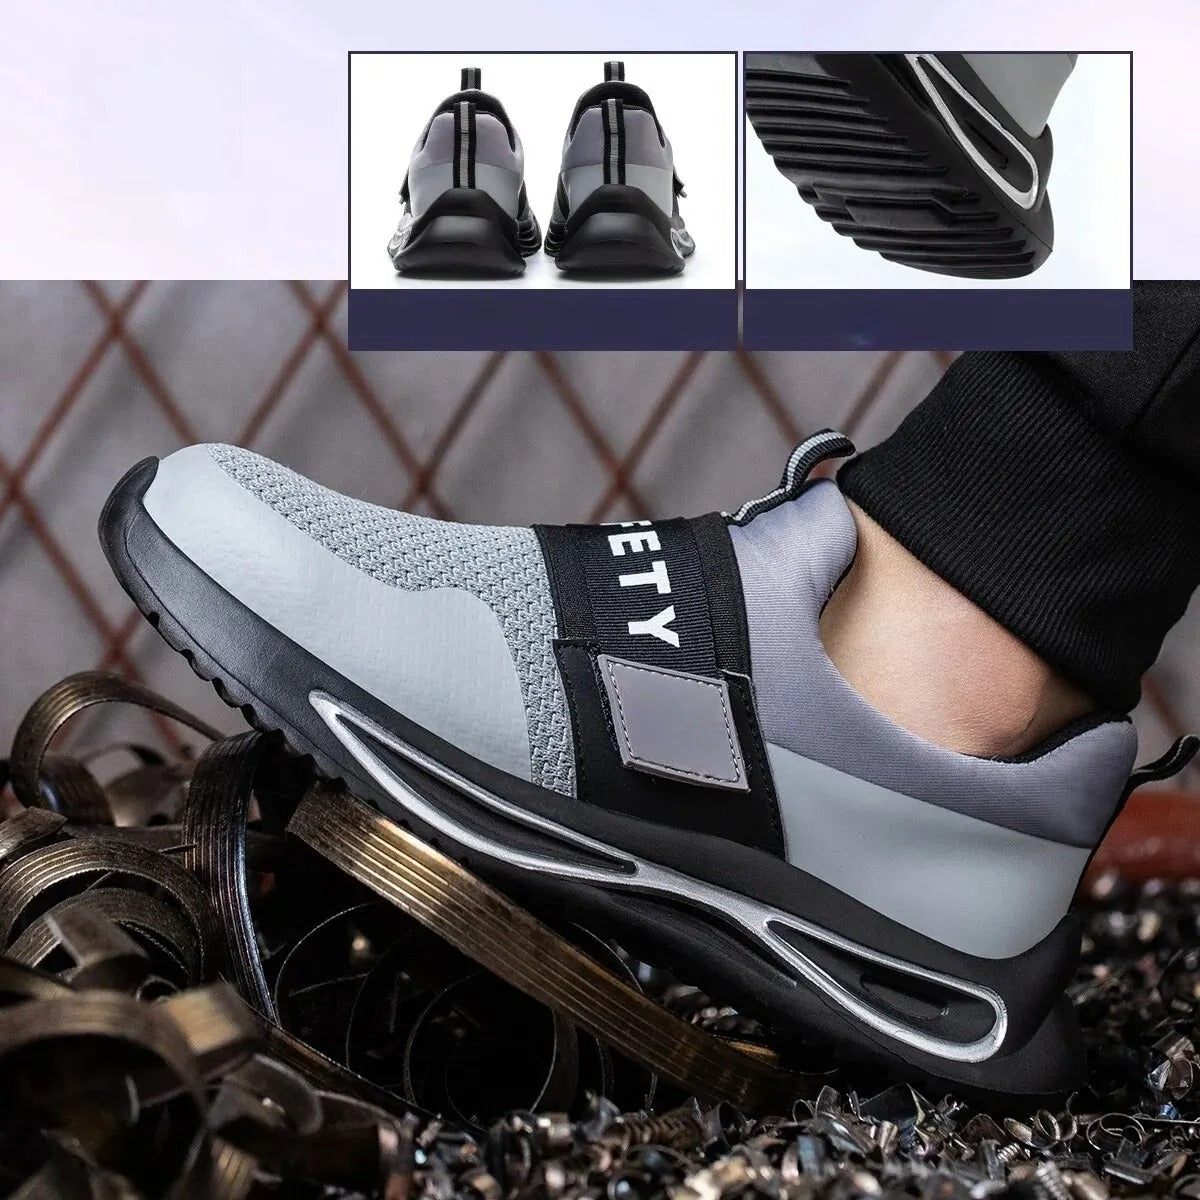 Zapatos de seguridad, informales ligeras y transpirables, zapatos protectores con velcro, puntera de acero, entresuela Kevlar